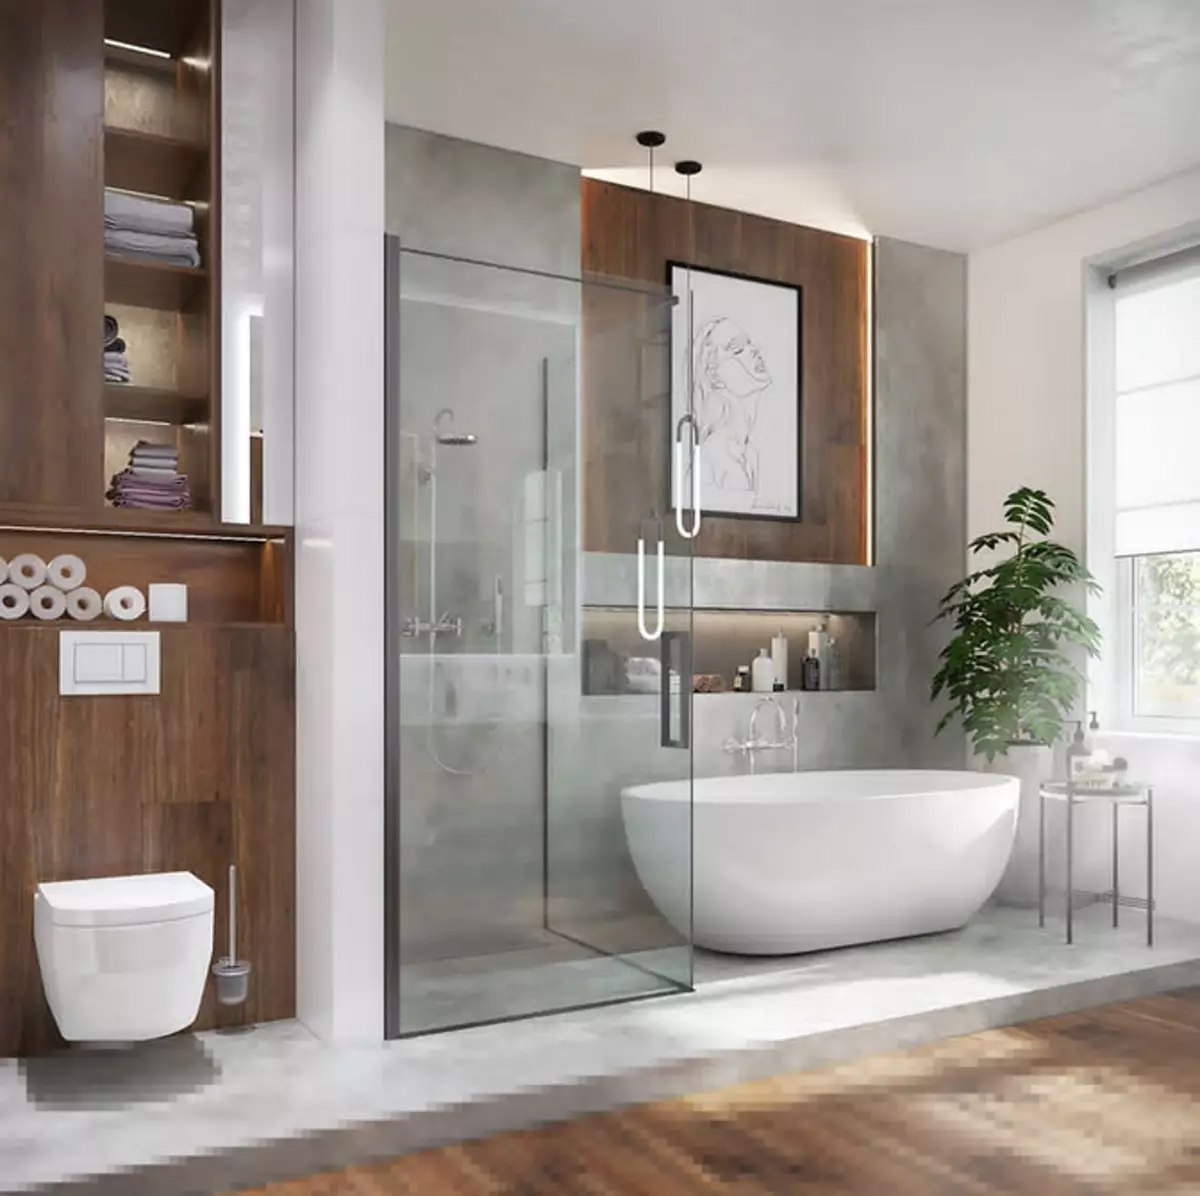 Duş ve Bath ile Banyo Tasarımı: 75 Fotoğraflar - IVD.RU 4108_24